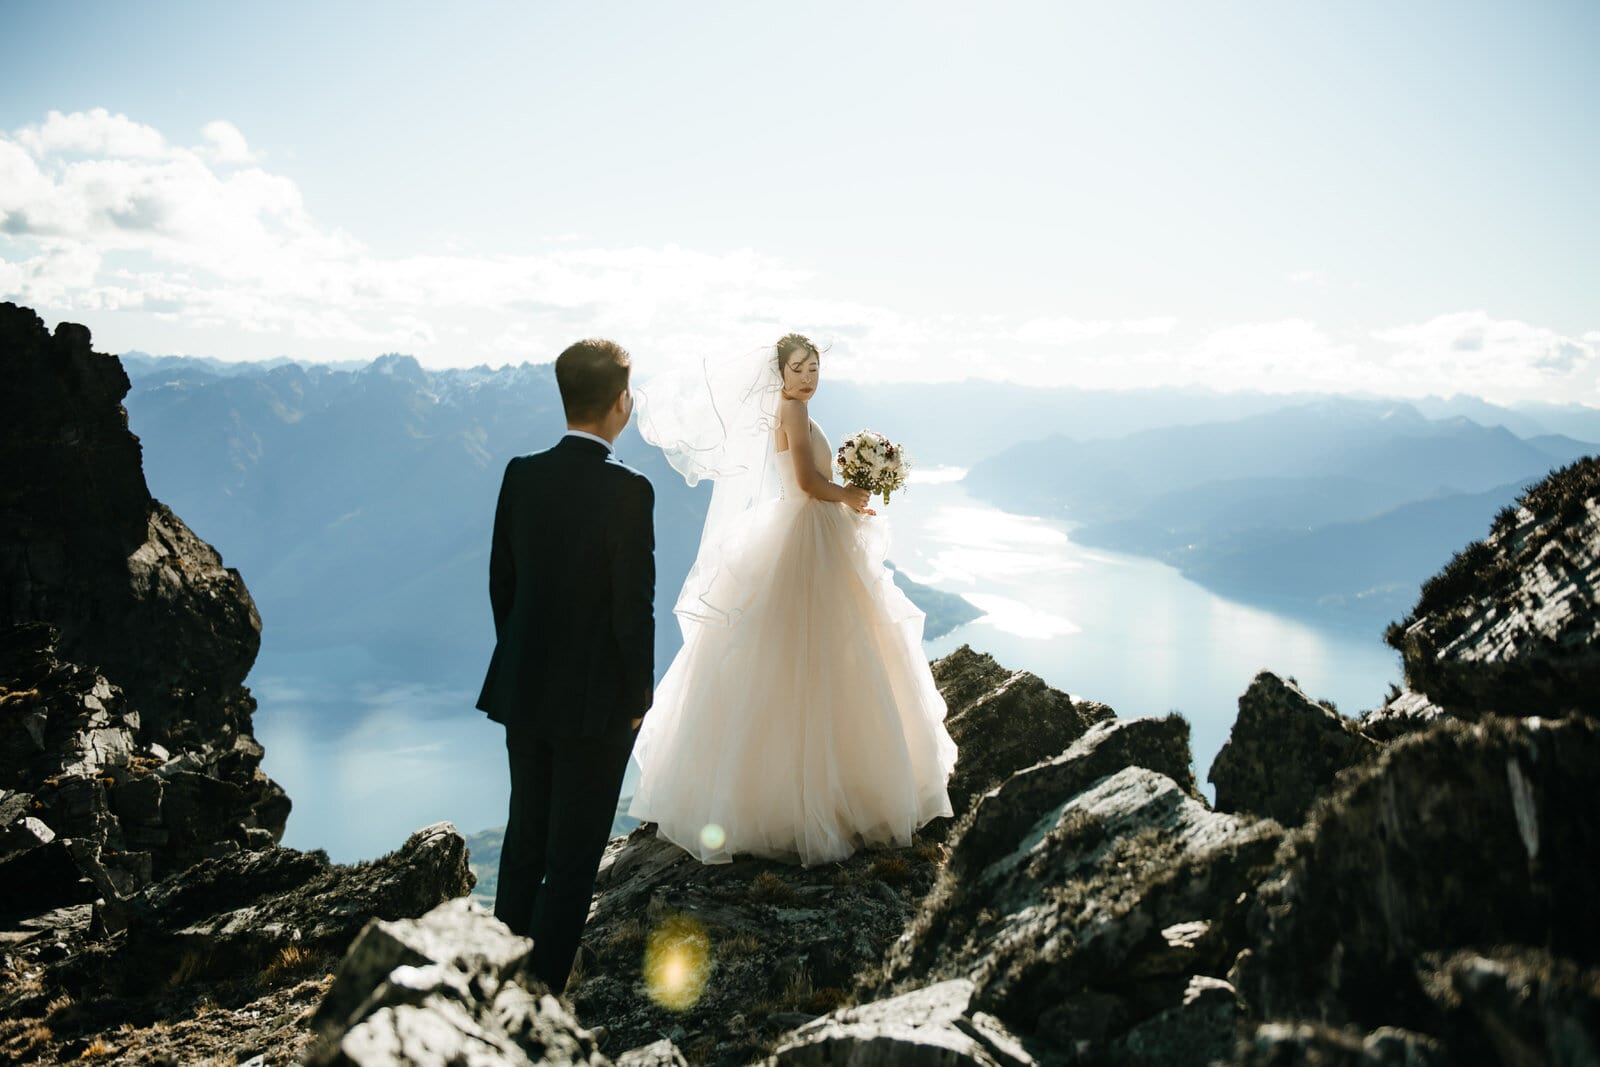 Nicole & Marcus' Queenstown NZ Heli Pre-Wedding Shoot